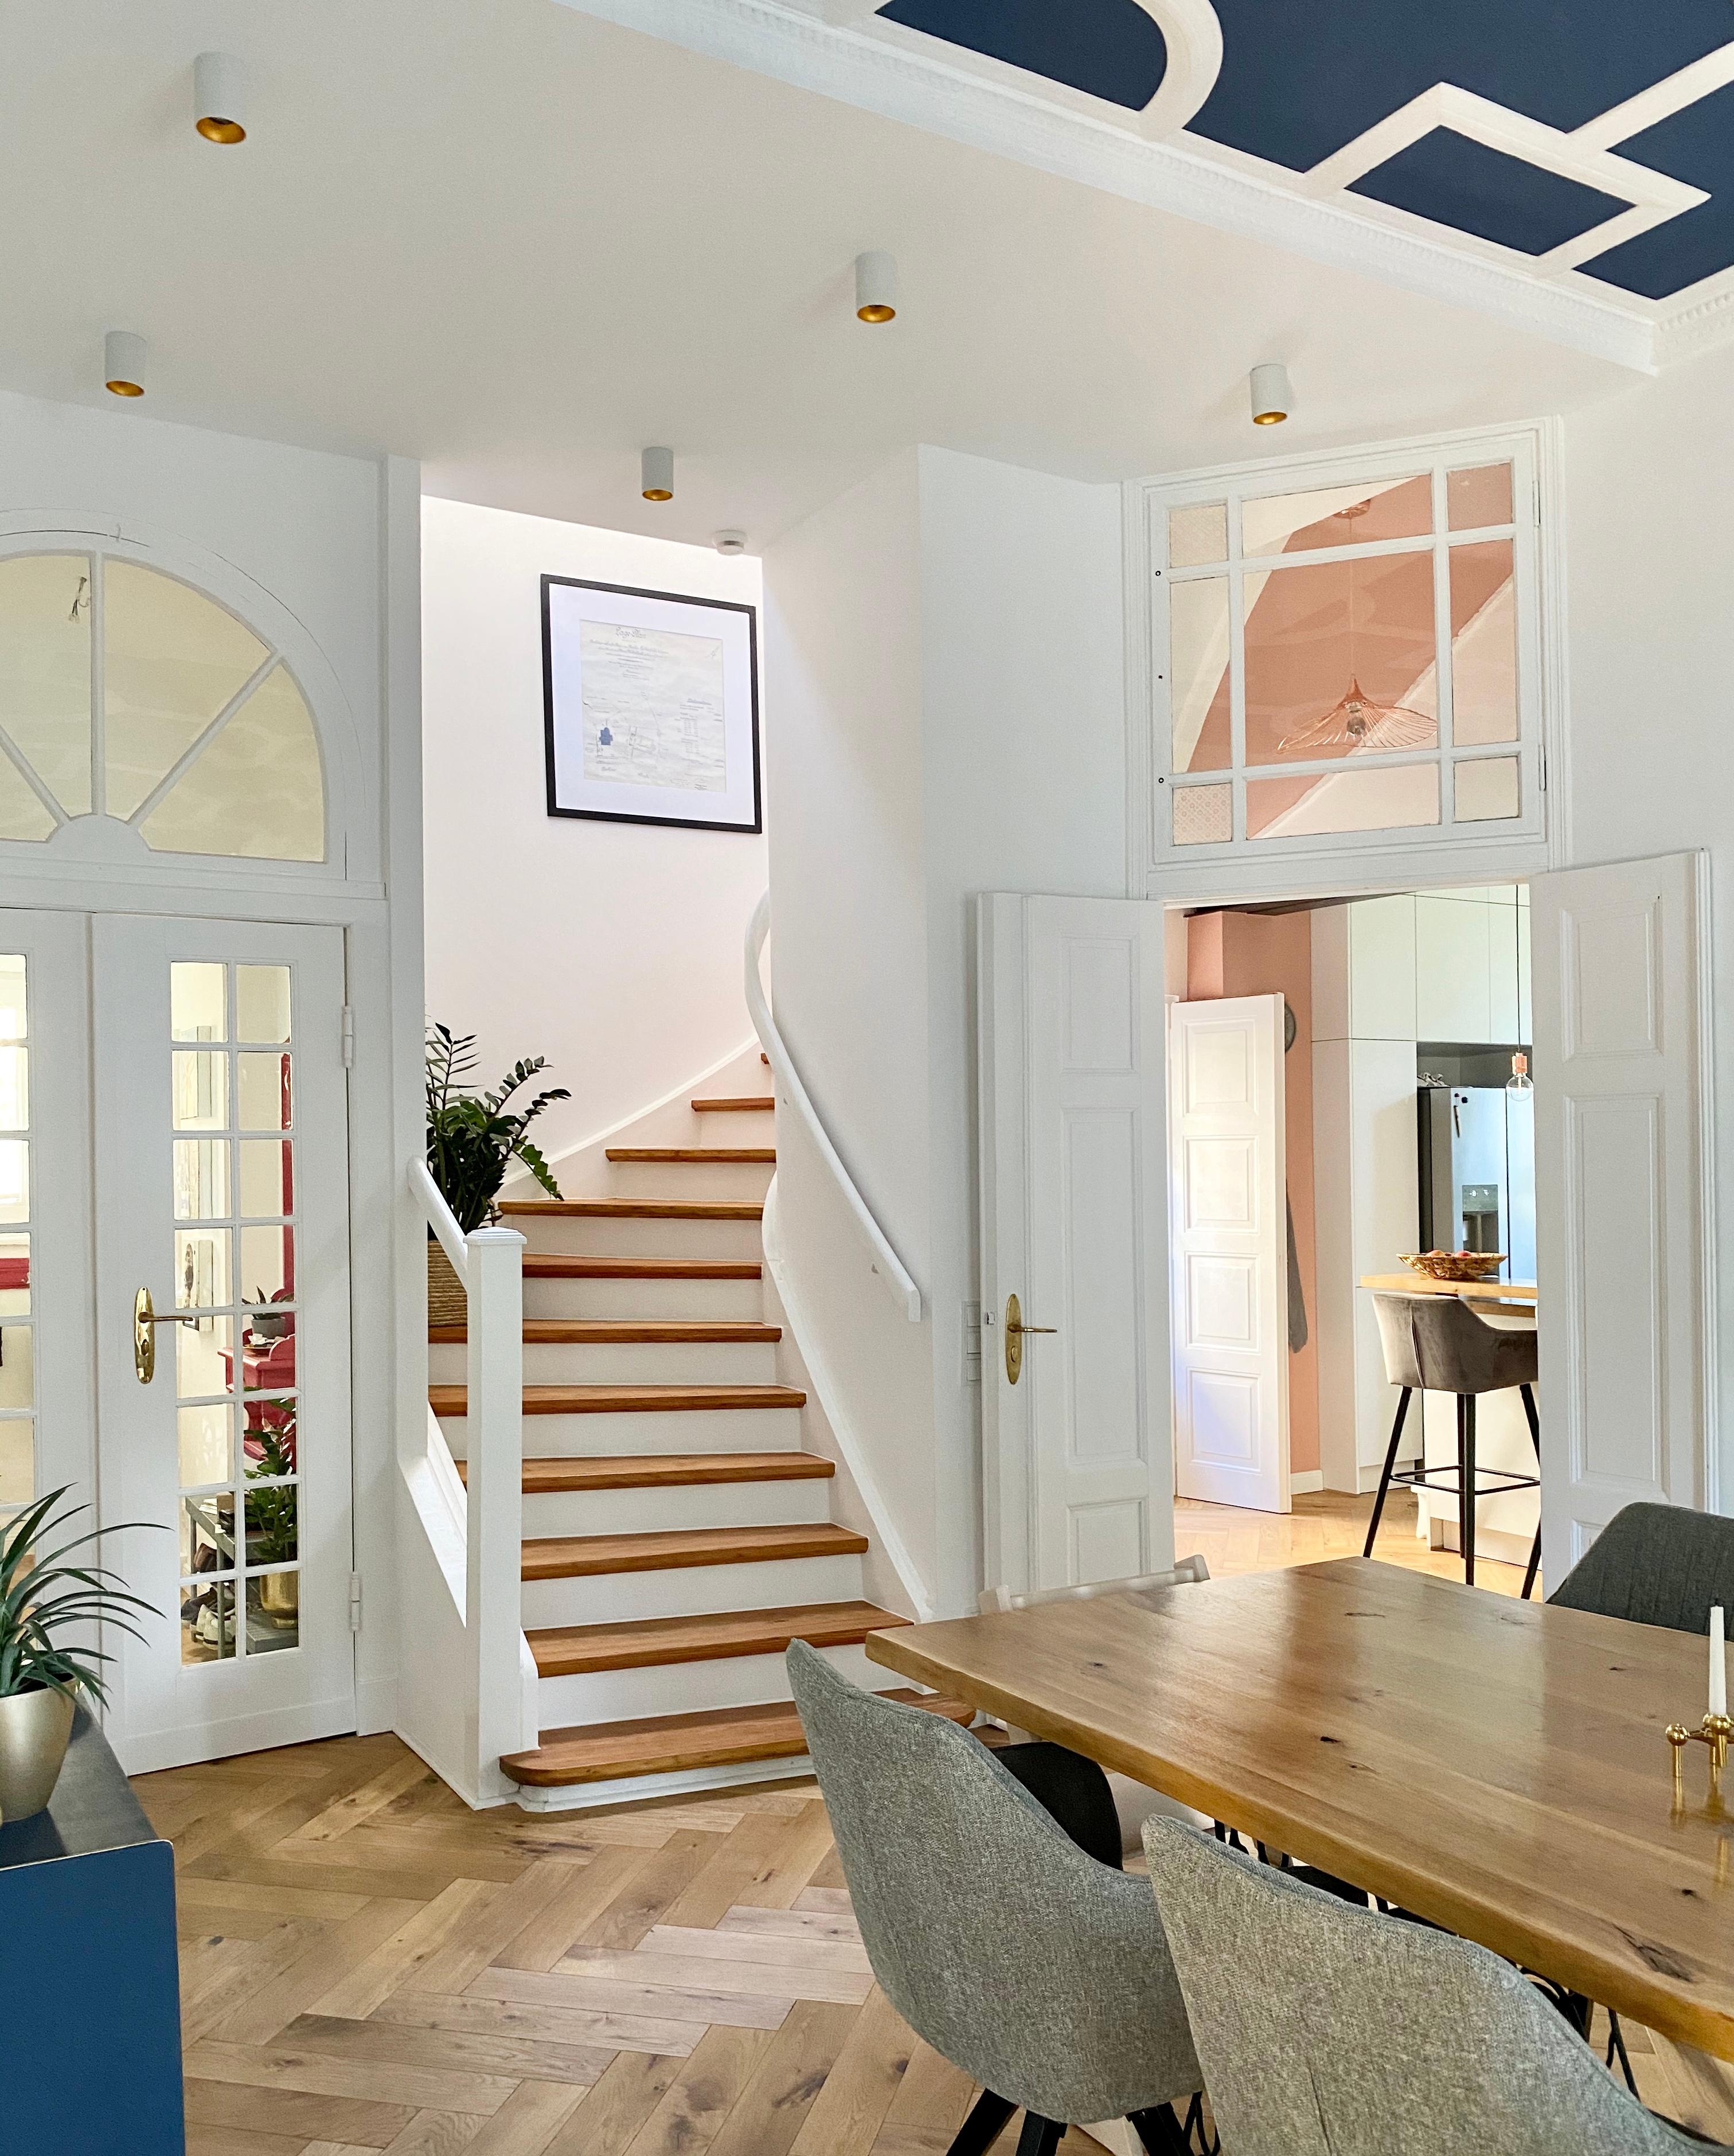 Wir sind ein offenes Haus ☺️ #altbauliebe #esszimmer #küche #treppe